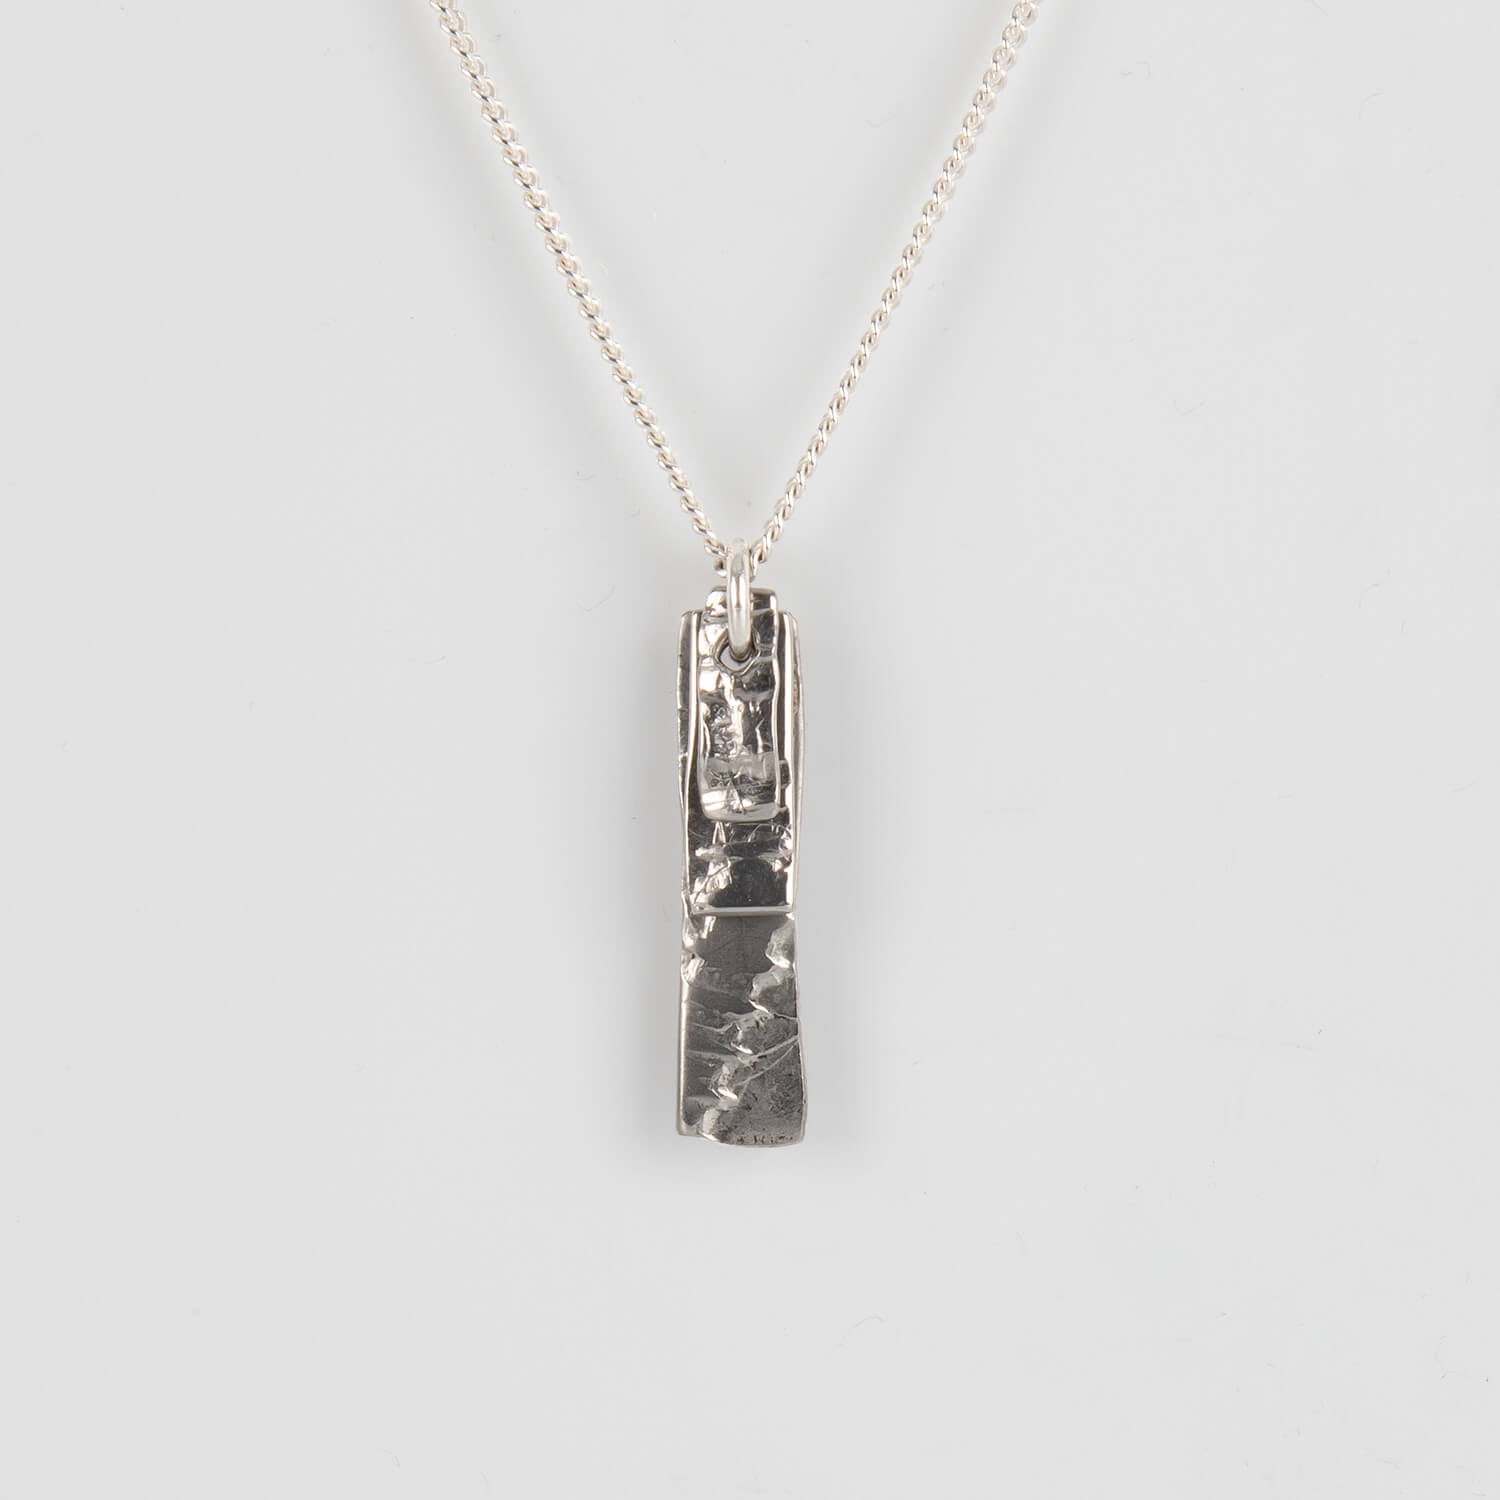 Tweek-Eek | Uni screws necklace b| Stainless steel